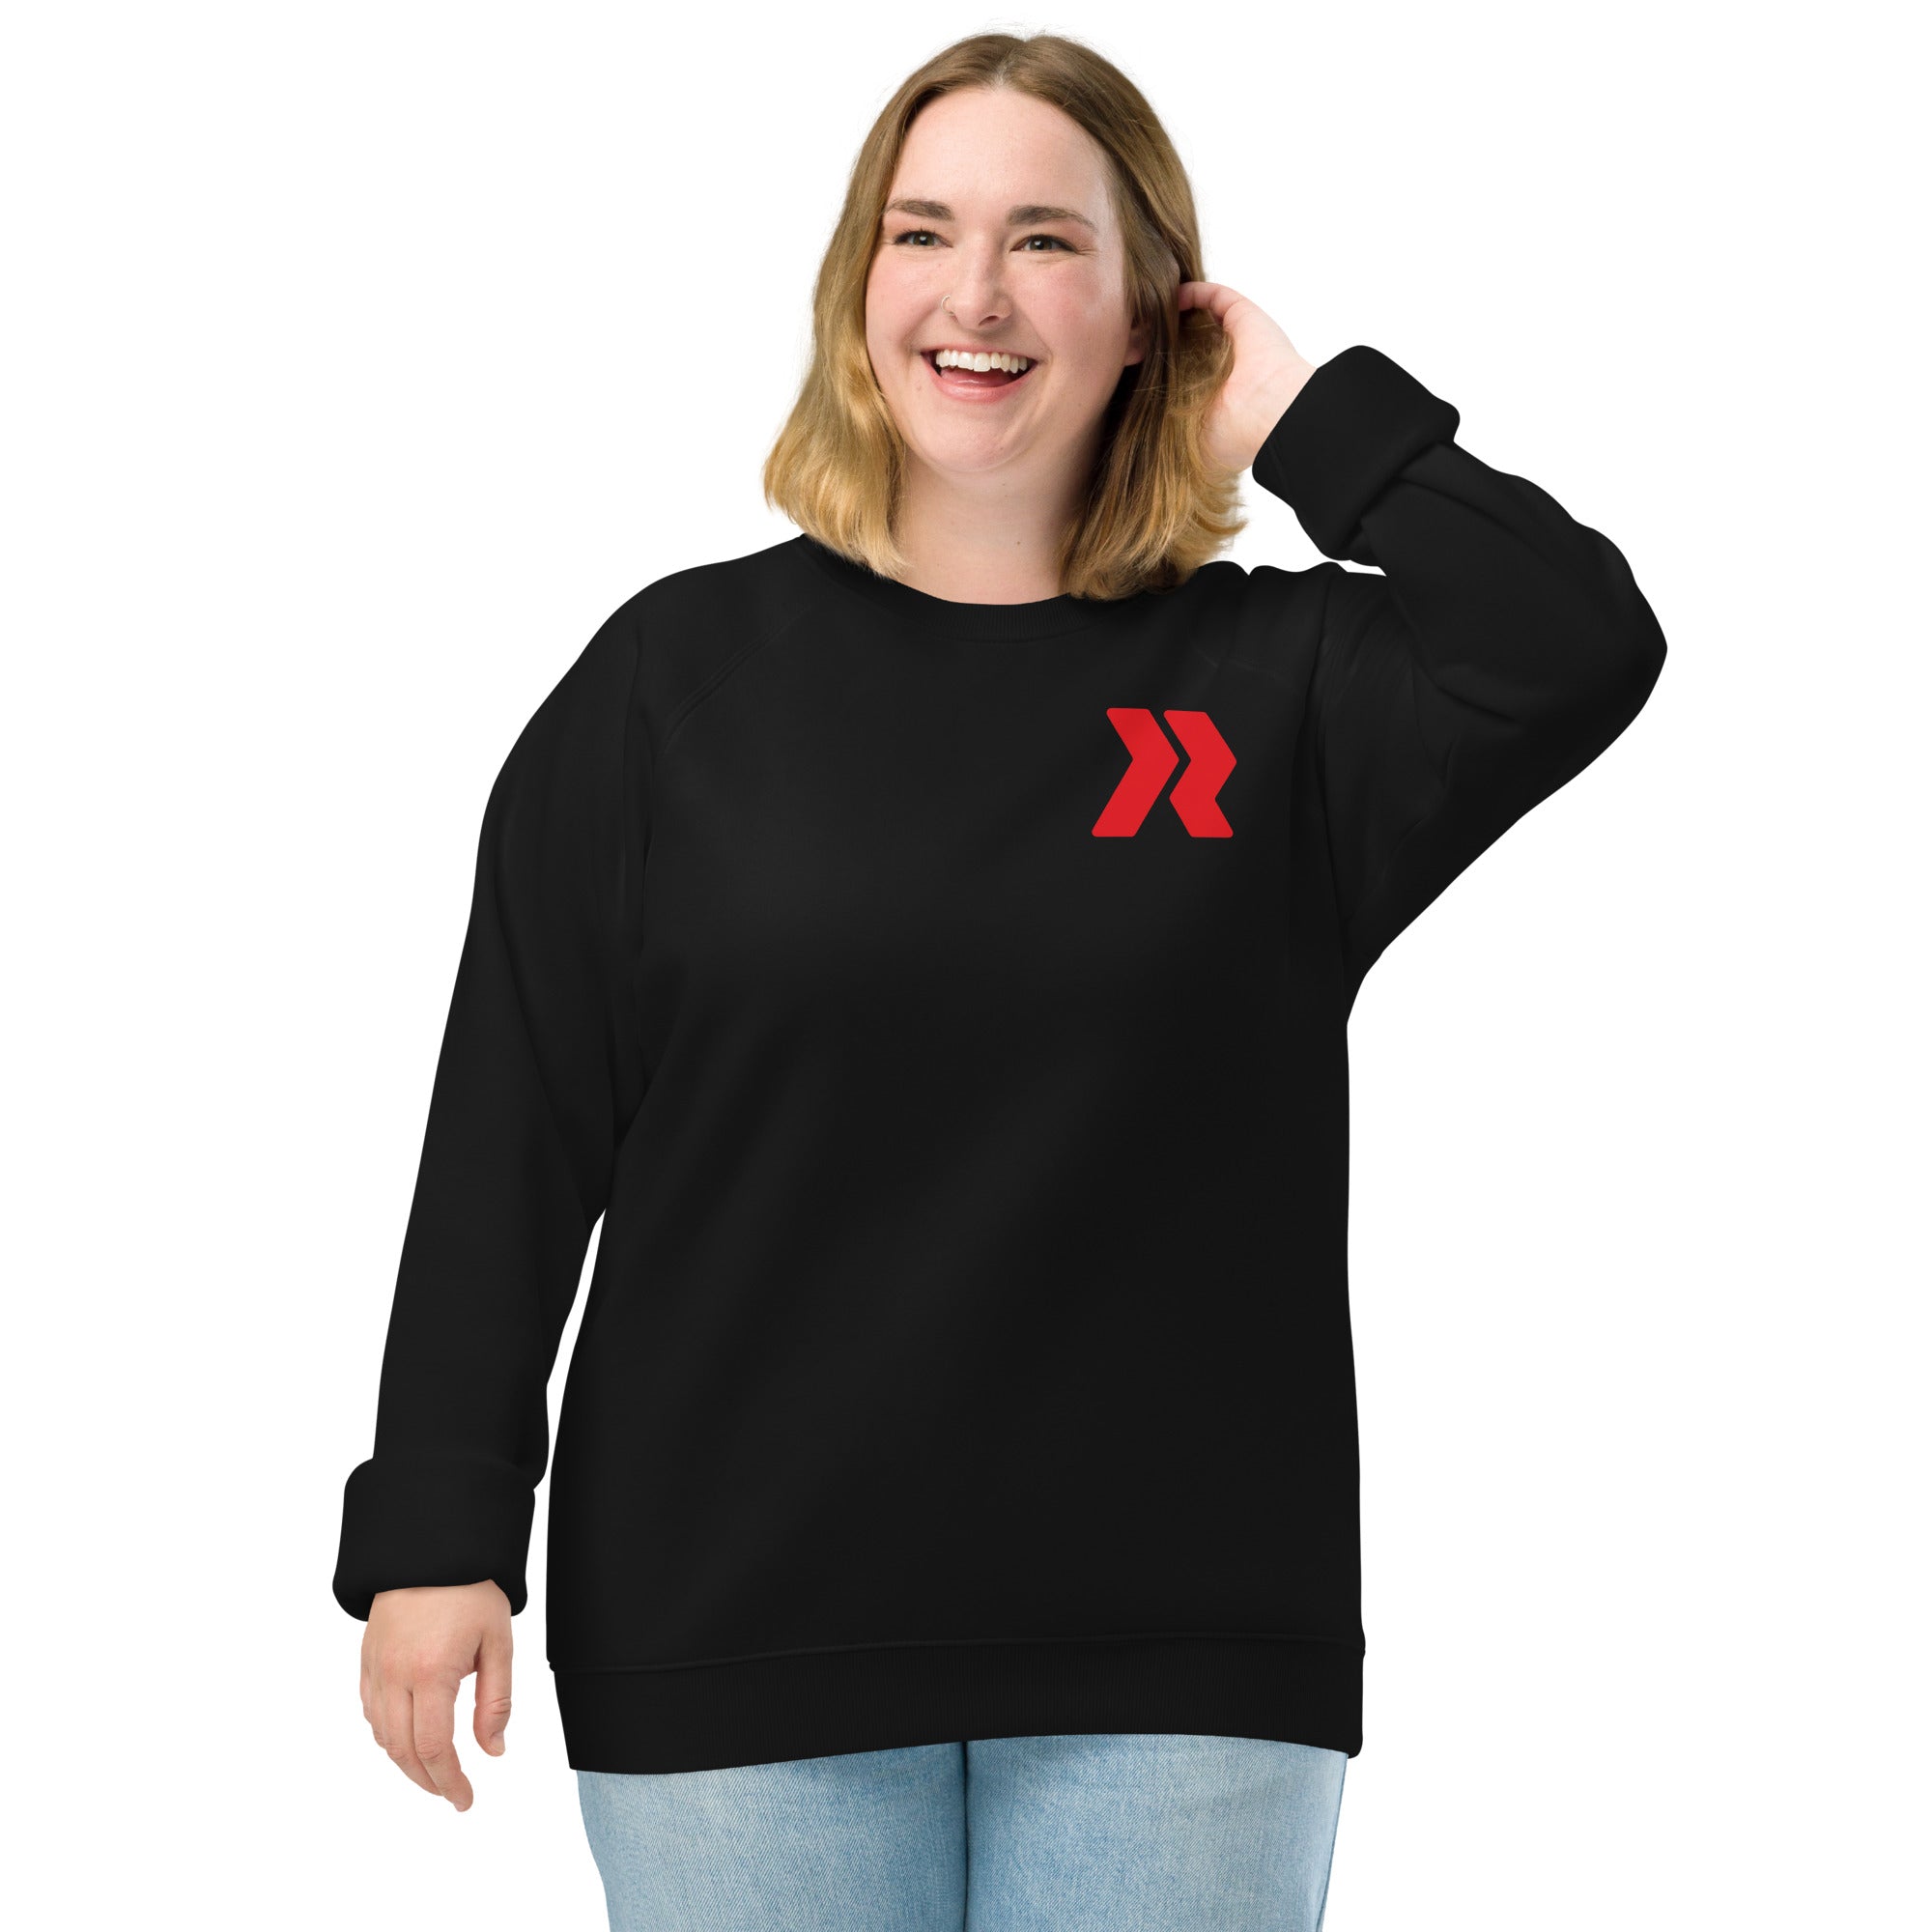 Bowie Logo Red - Back R/W - Black Unisex organic raglan sweatshirt